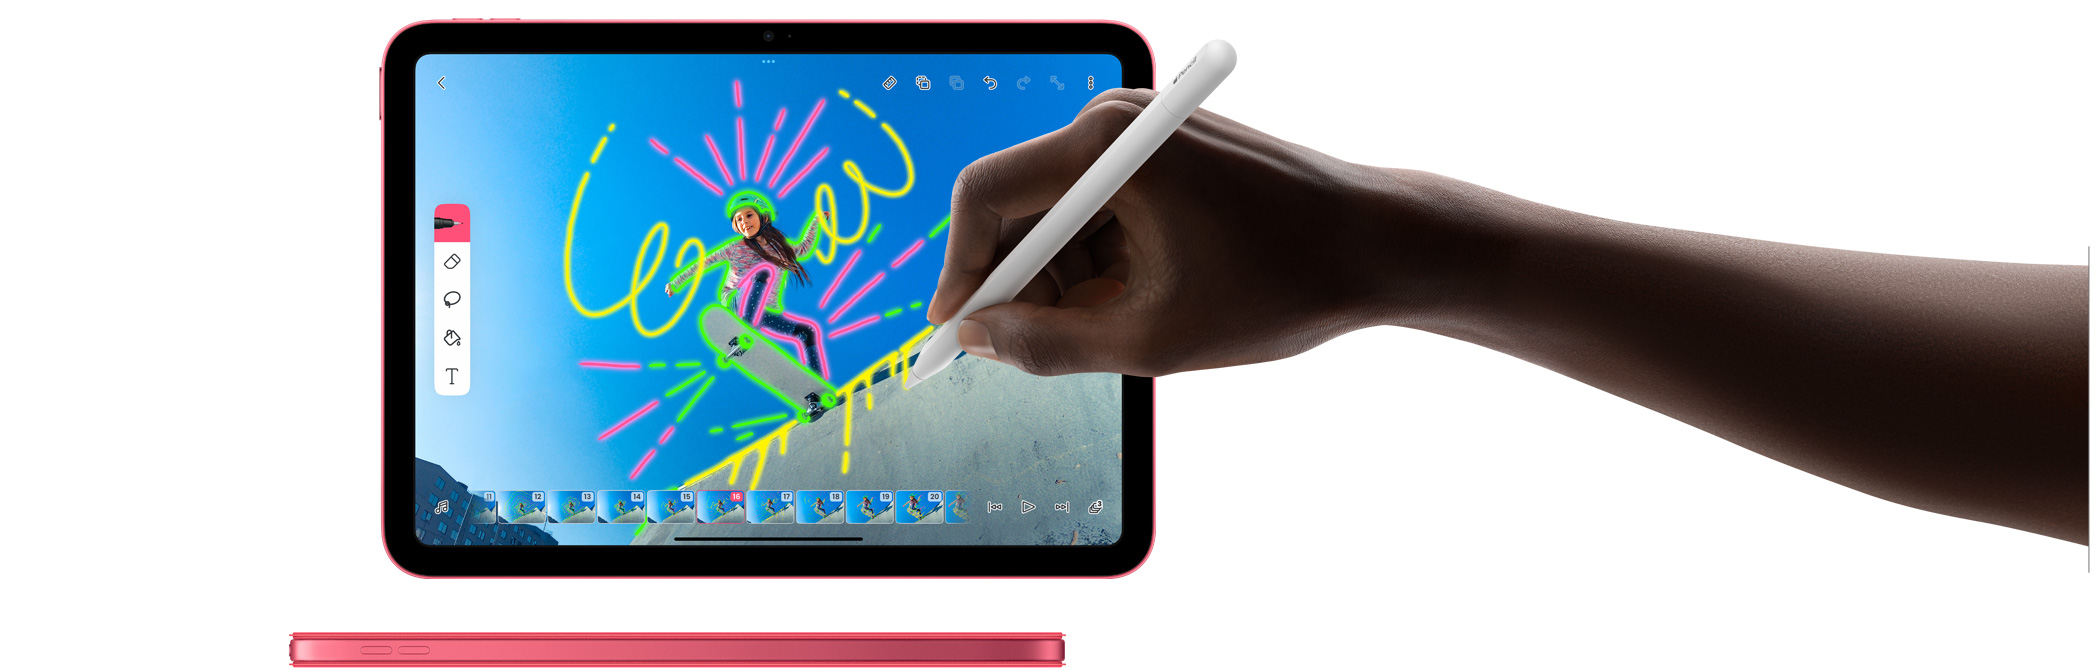 FlipaClip-app waarin Apple Pencil wordt gebruikt en een zijaanzicht van een roze iPad met een bijpassende Smart Folio-cover